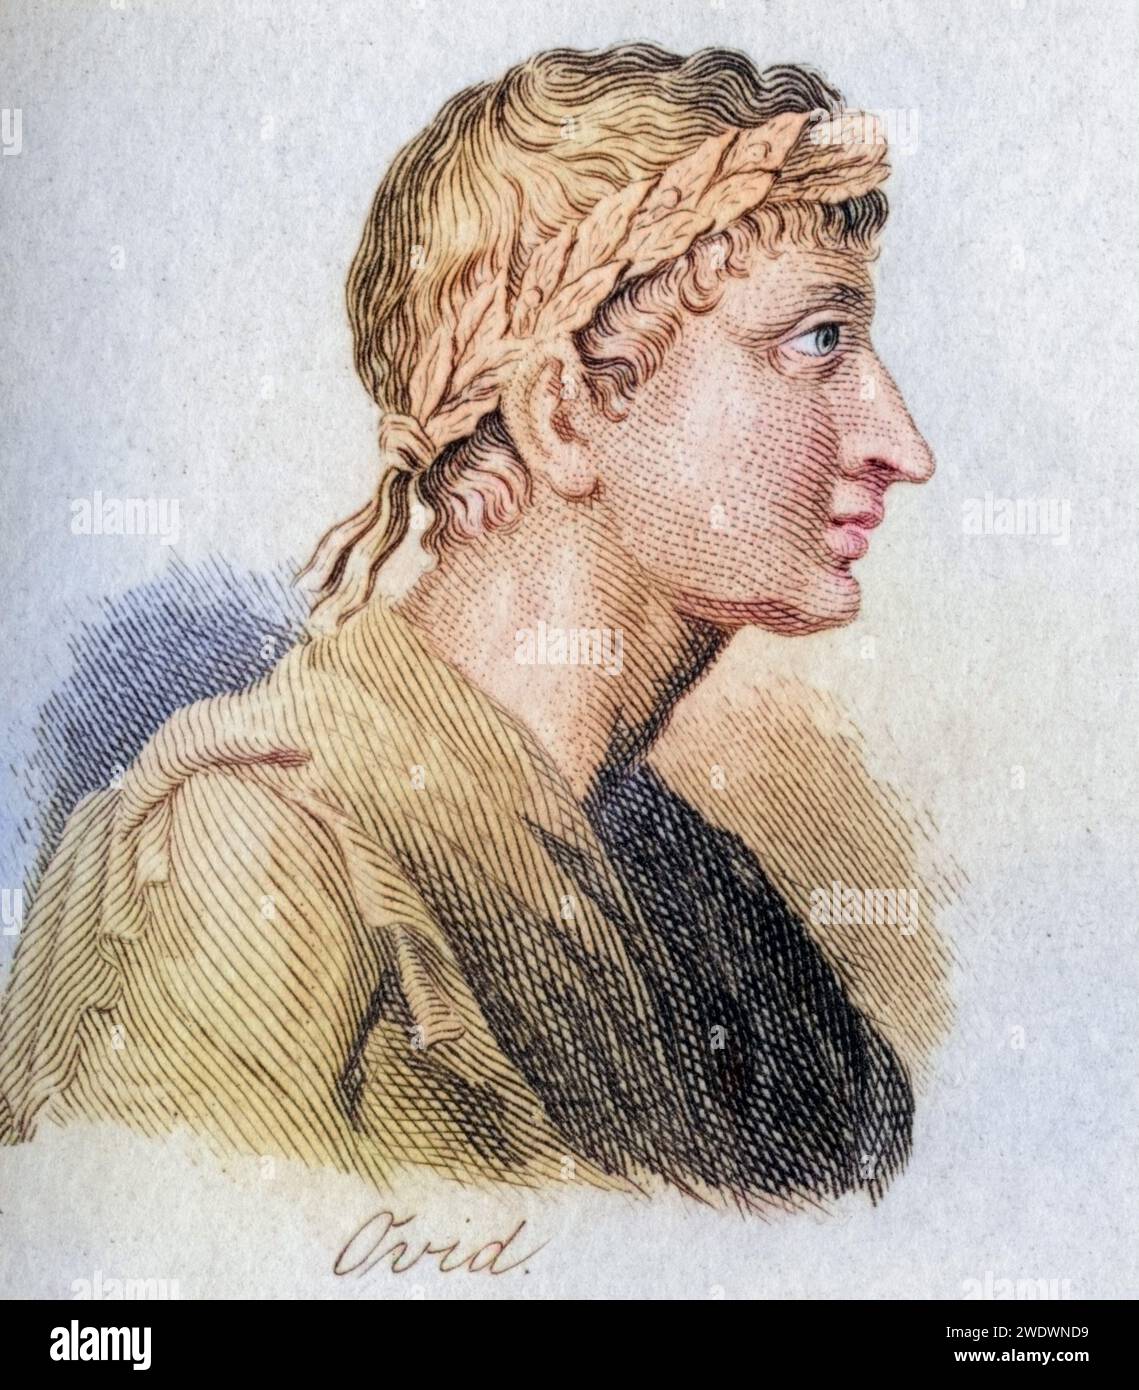 Ovidio, Publius Ovidius naso, 43 v. Chr. - 17 n. Chr. Römischer Dichter, Historisch, digital restaurierte Reproduktion von einer Vorlage aus dem 19. Jahrhundert, data record non indicata Foto Stock